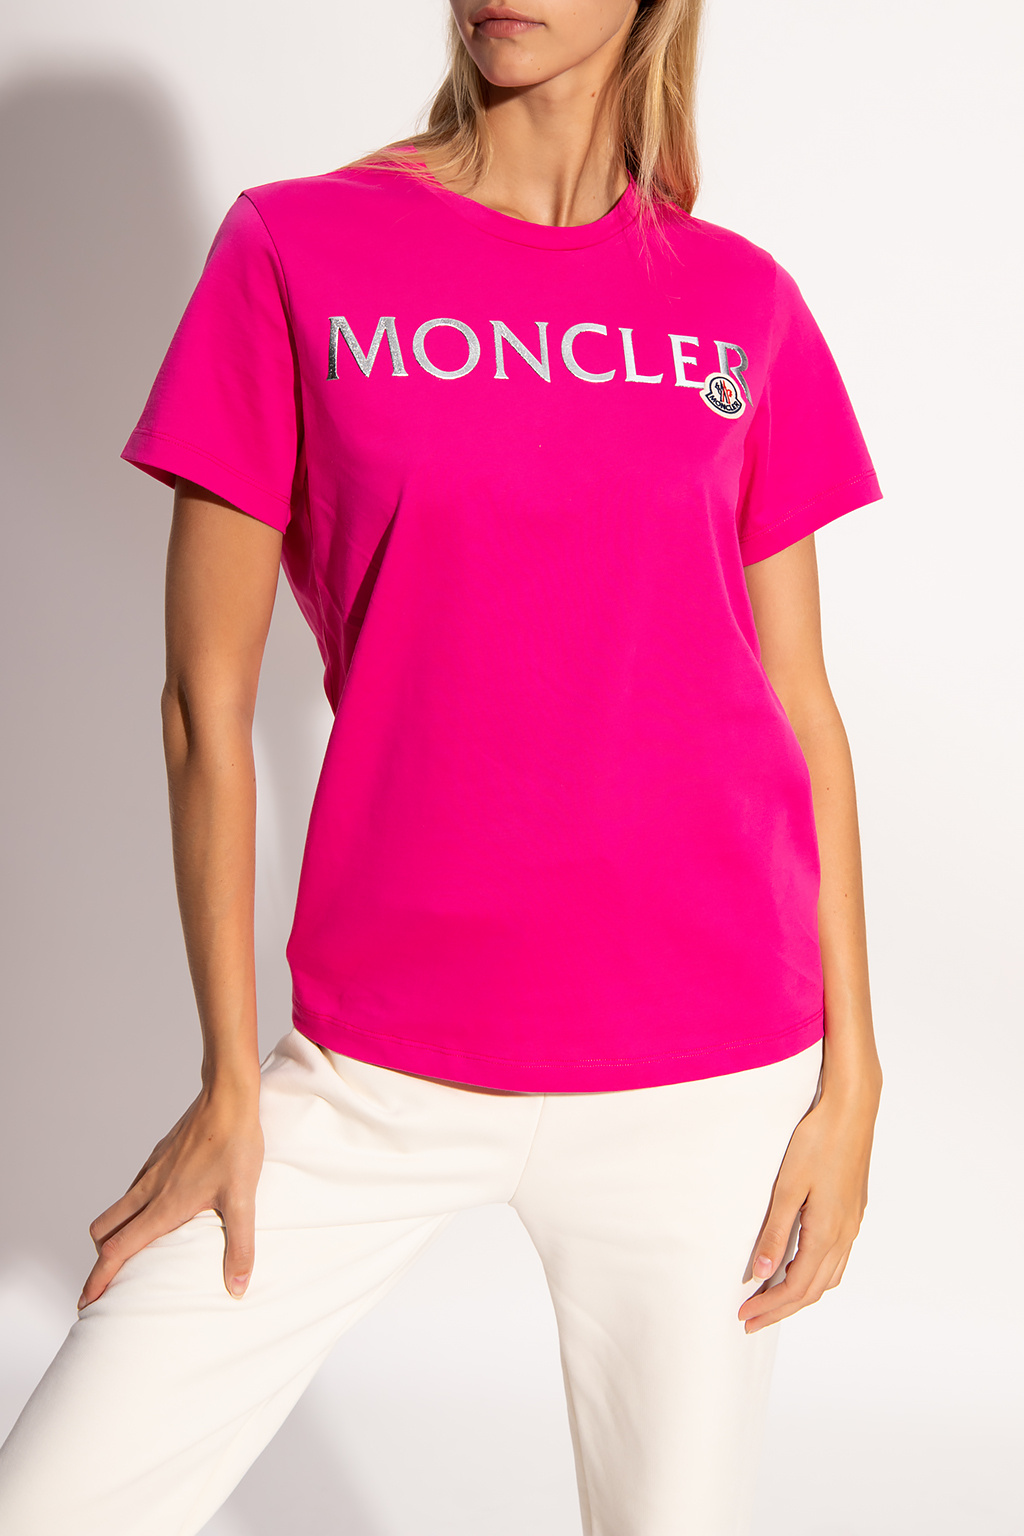 Moncler Logo T-shirt | Women's Clothing | IetpShops